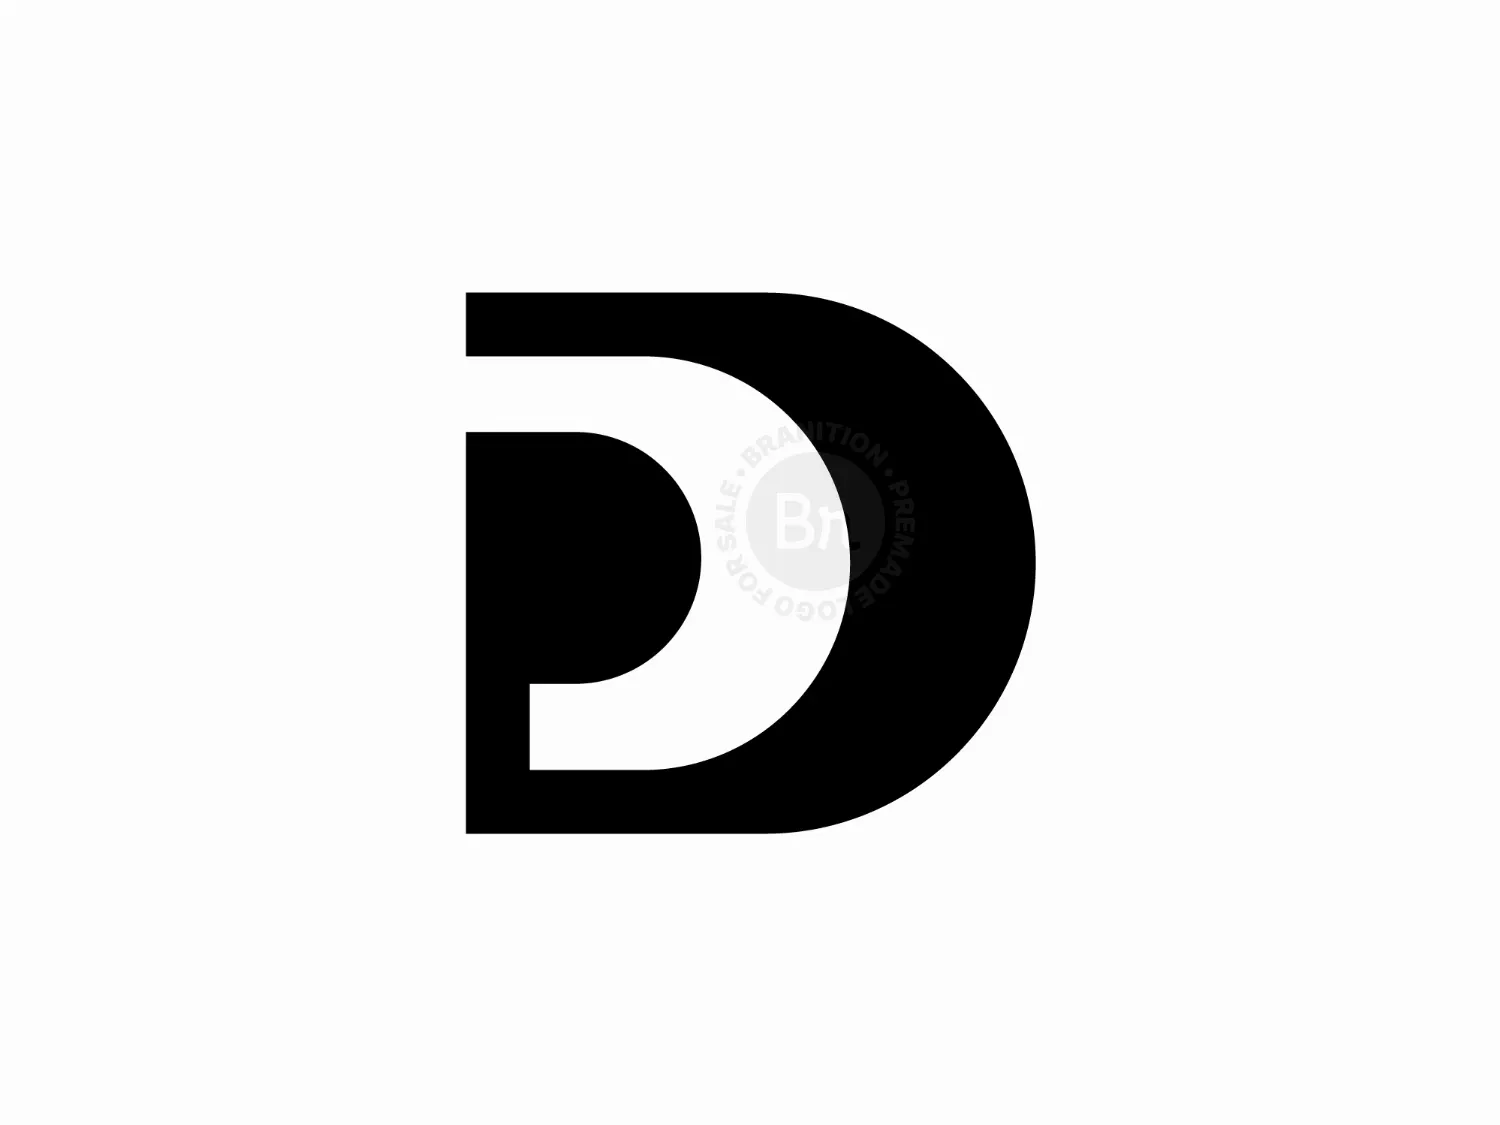 PD OR DP Logo